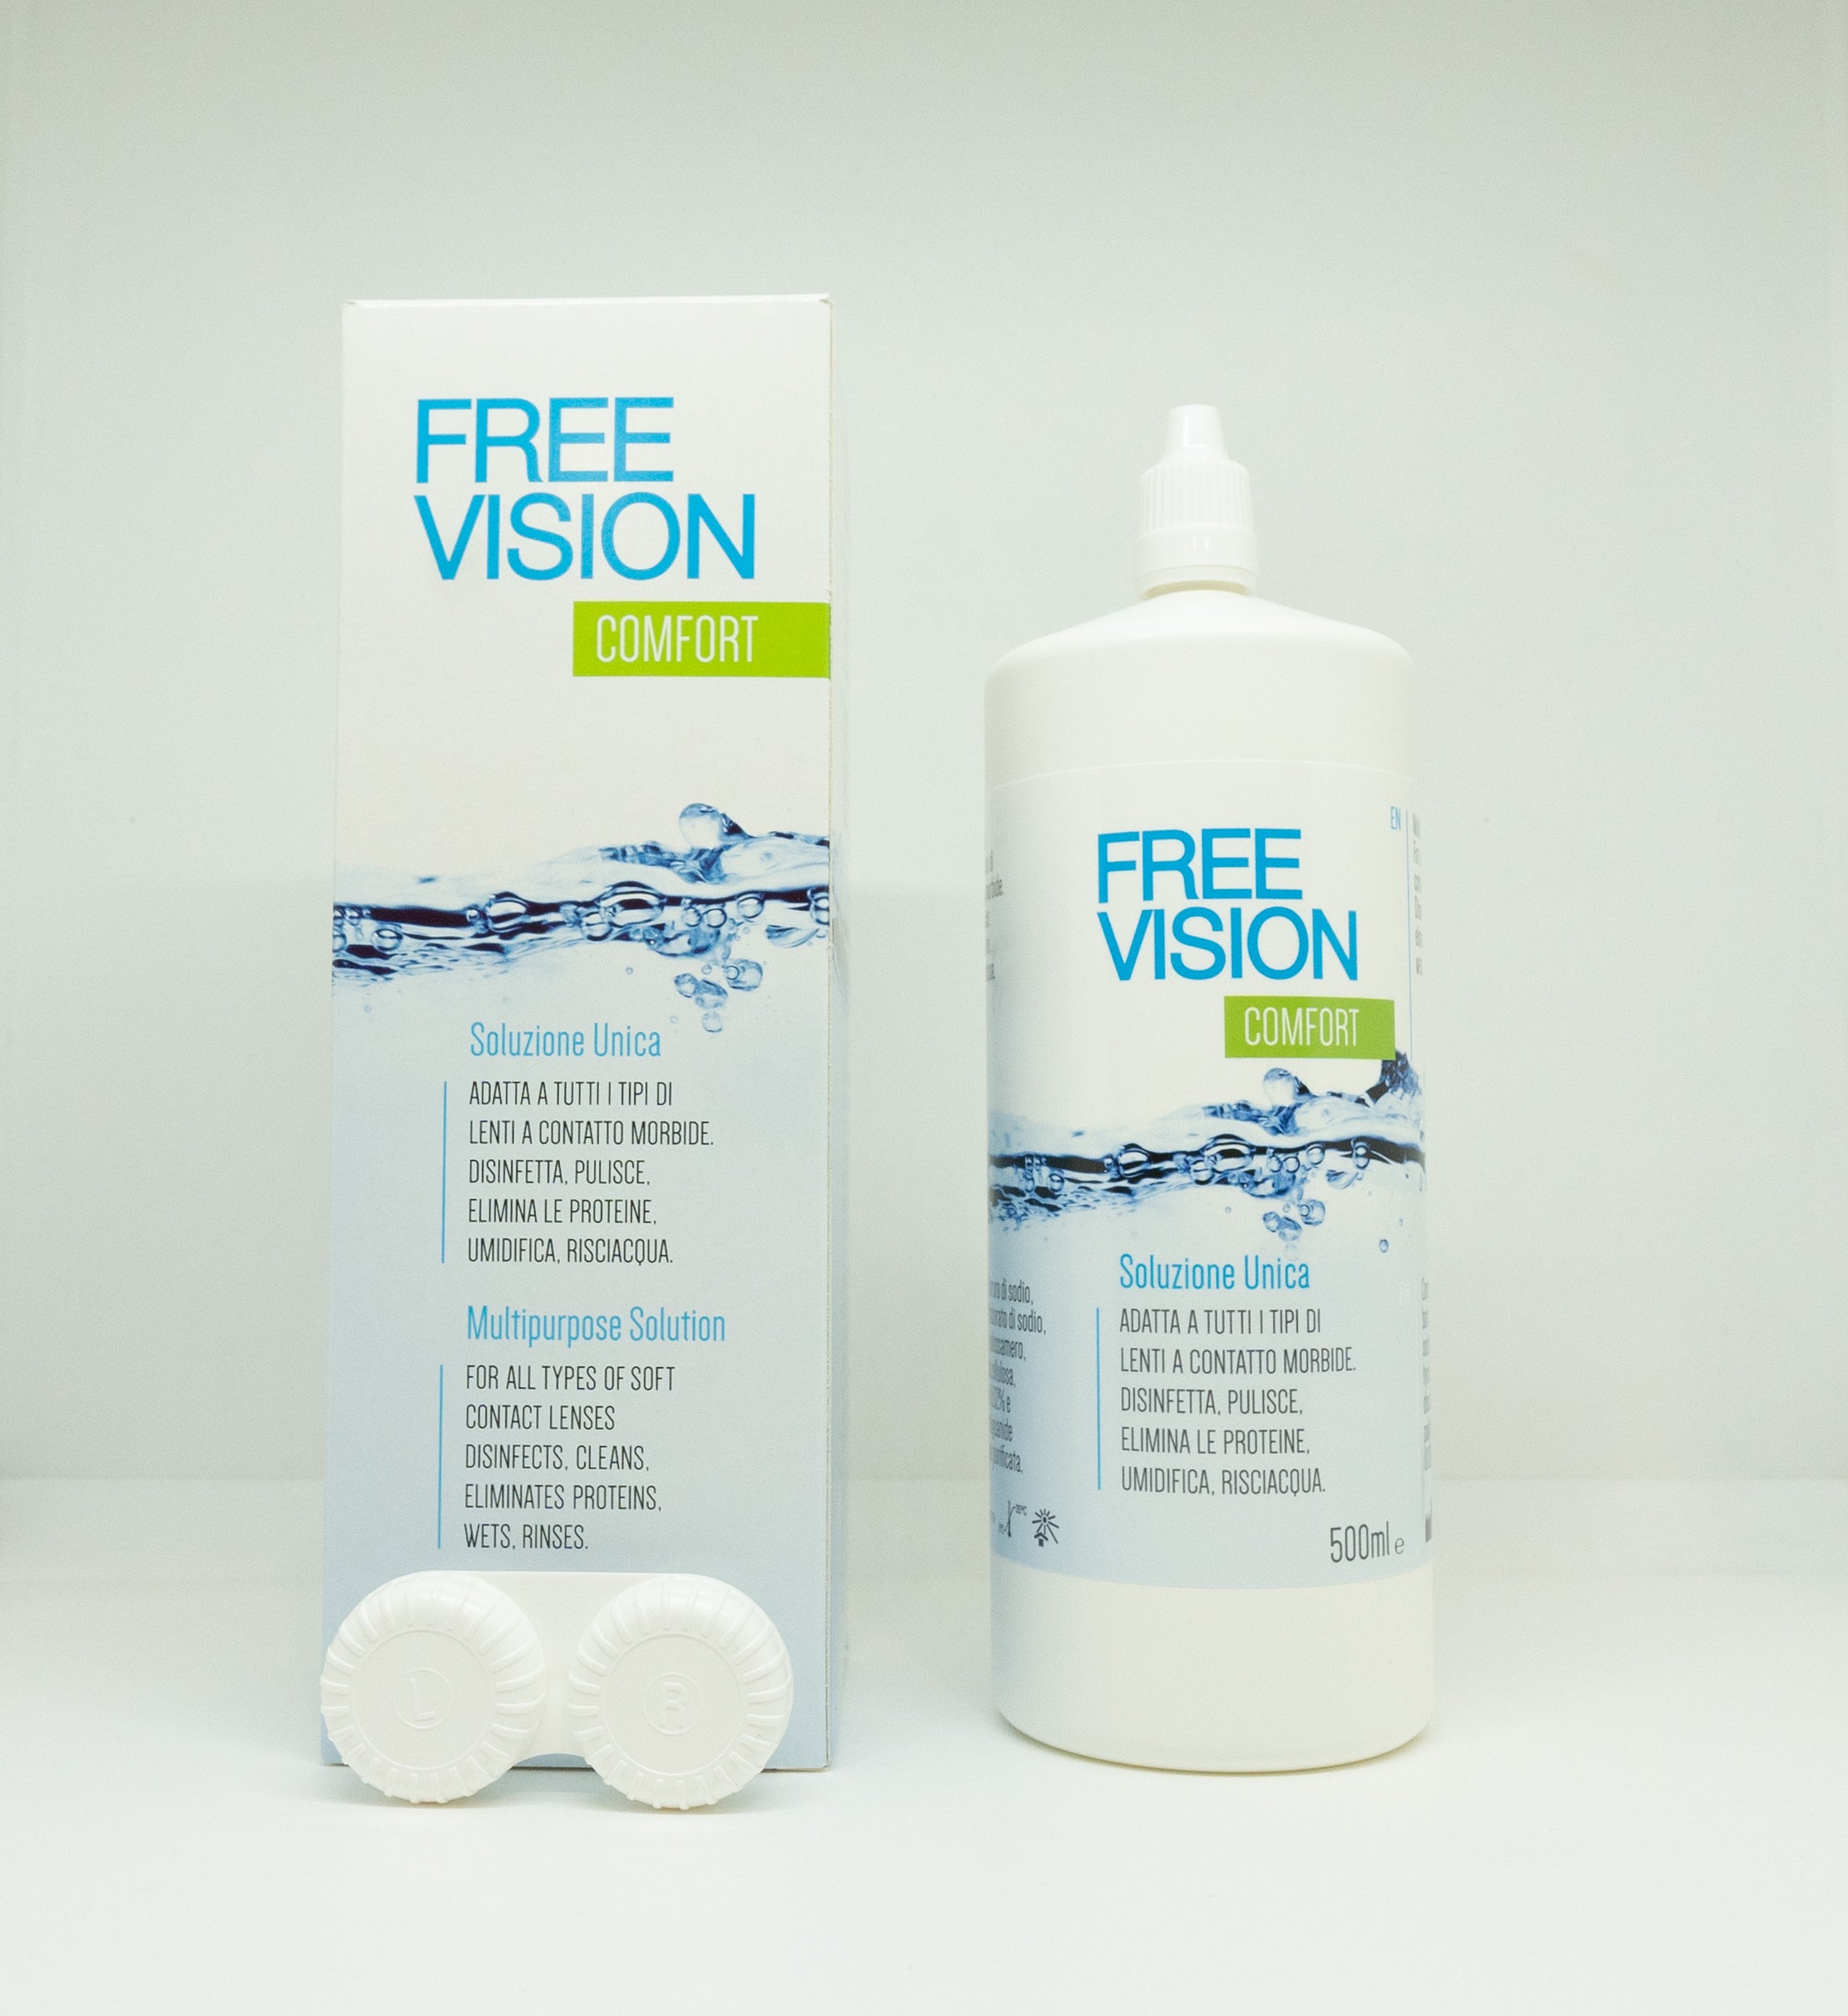 Free vision 500 ml soluzione unica